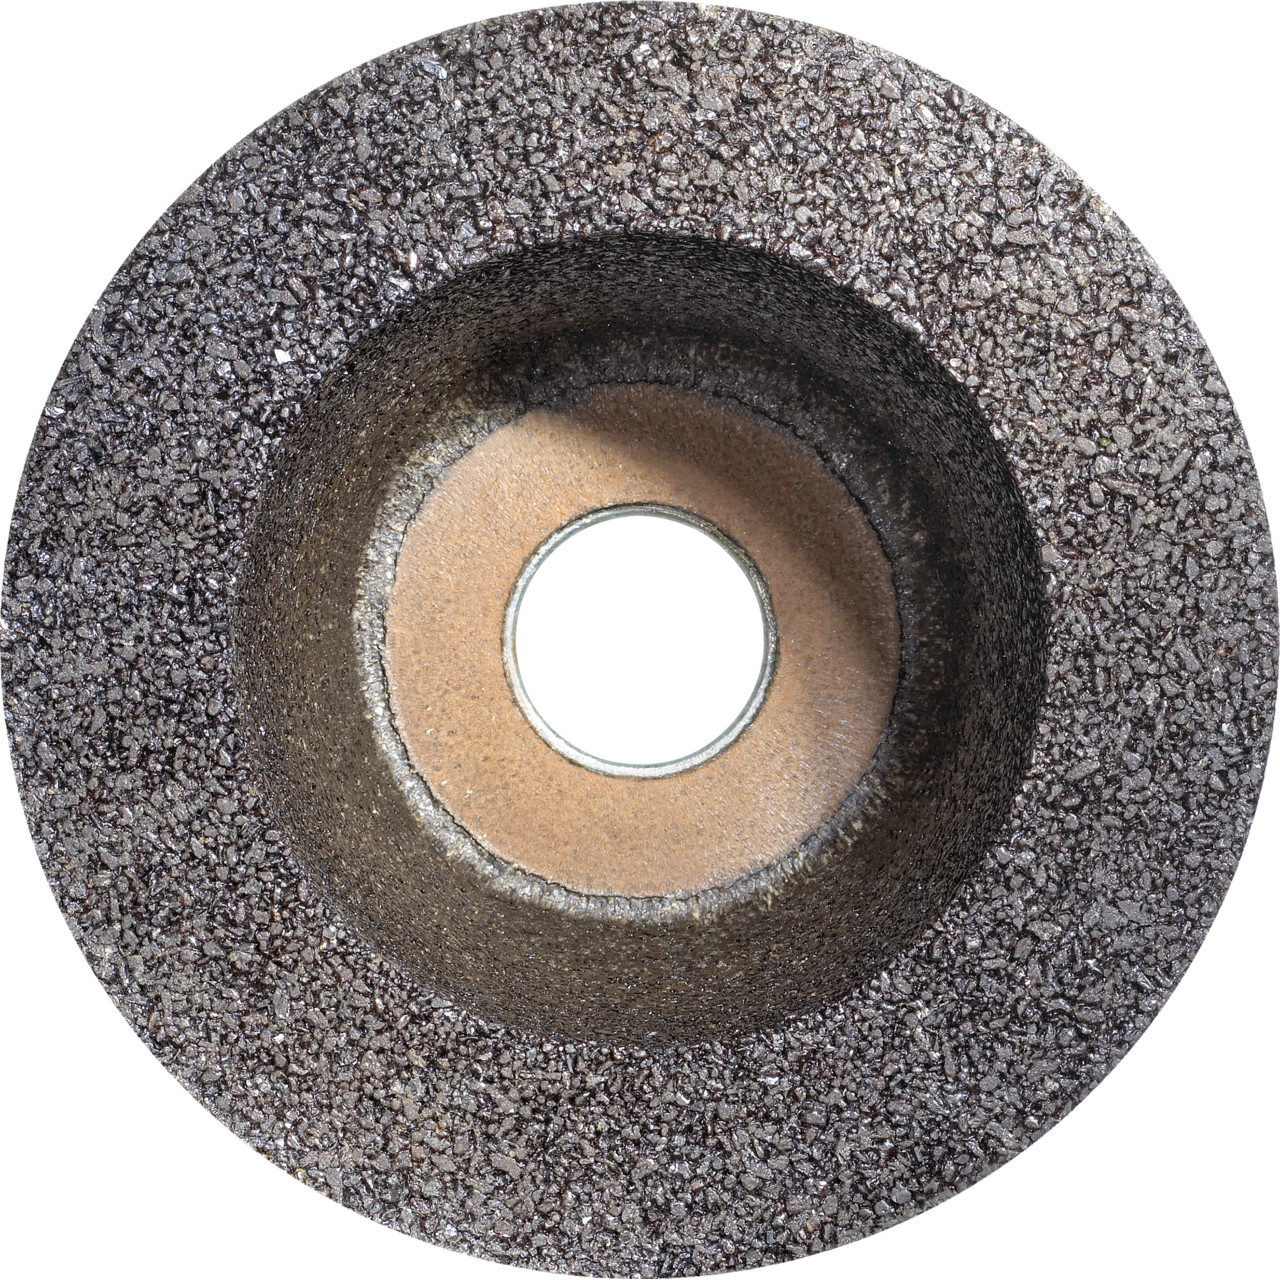 Tyrolit Copa de resina sintética D/JxDxH 110/90x55x22,2 Para acero, forma: 11BT (rueda de copa), Art. 895678